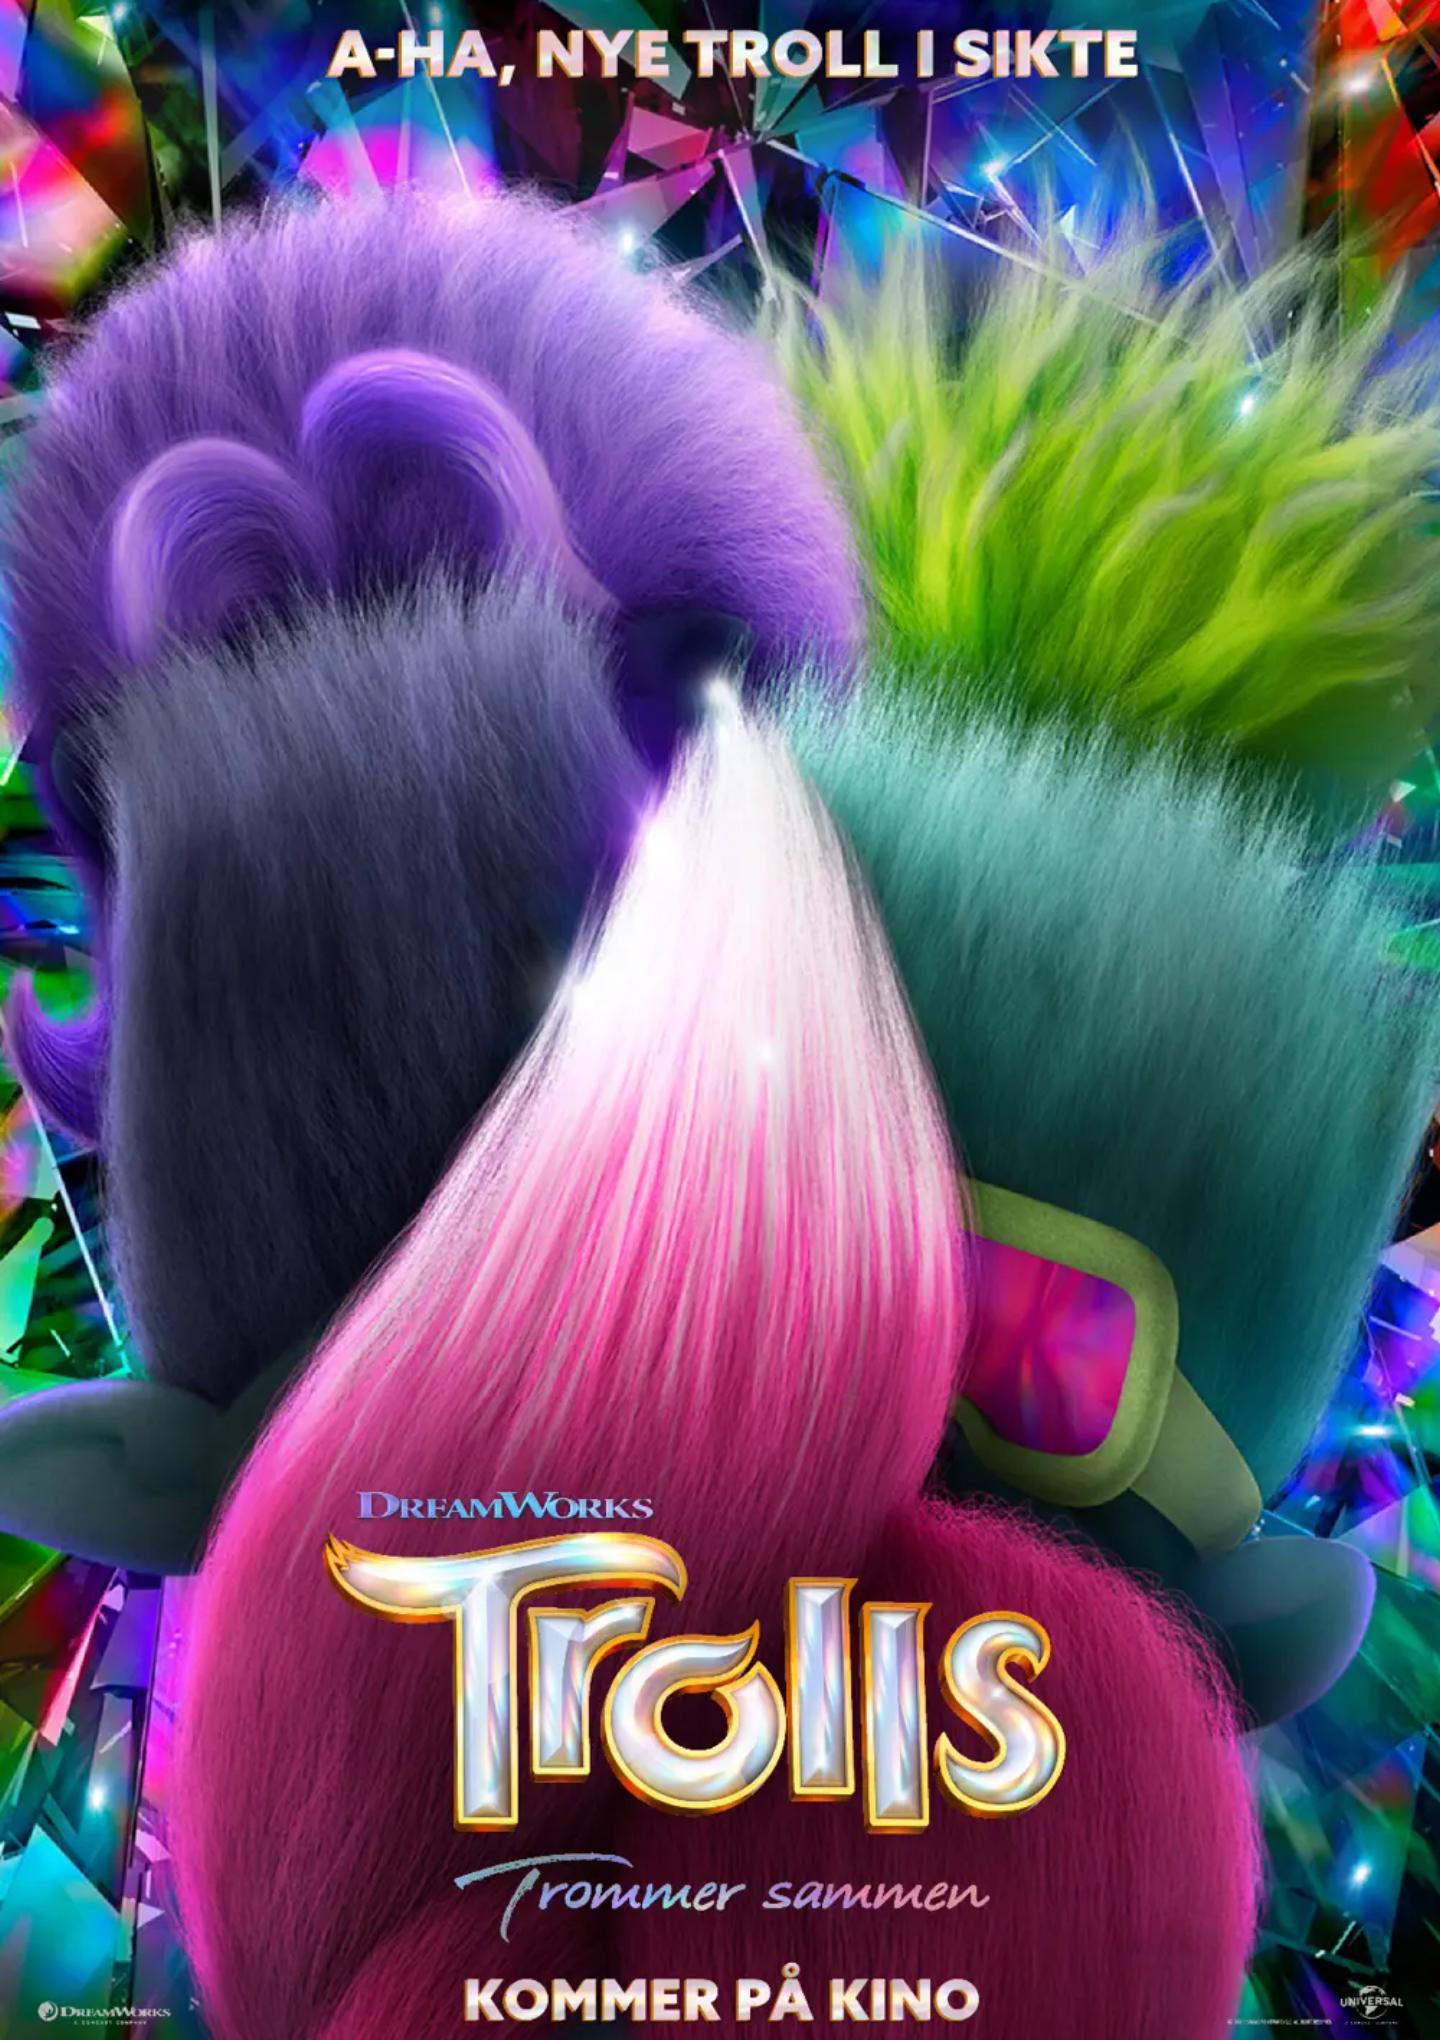 Plakat for 'Trolls trommer sammen'